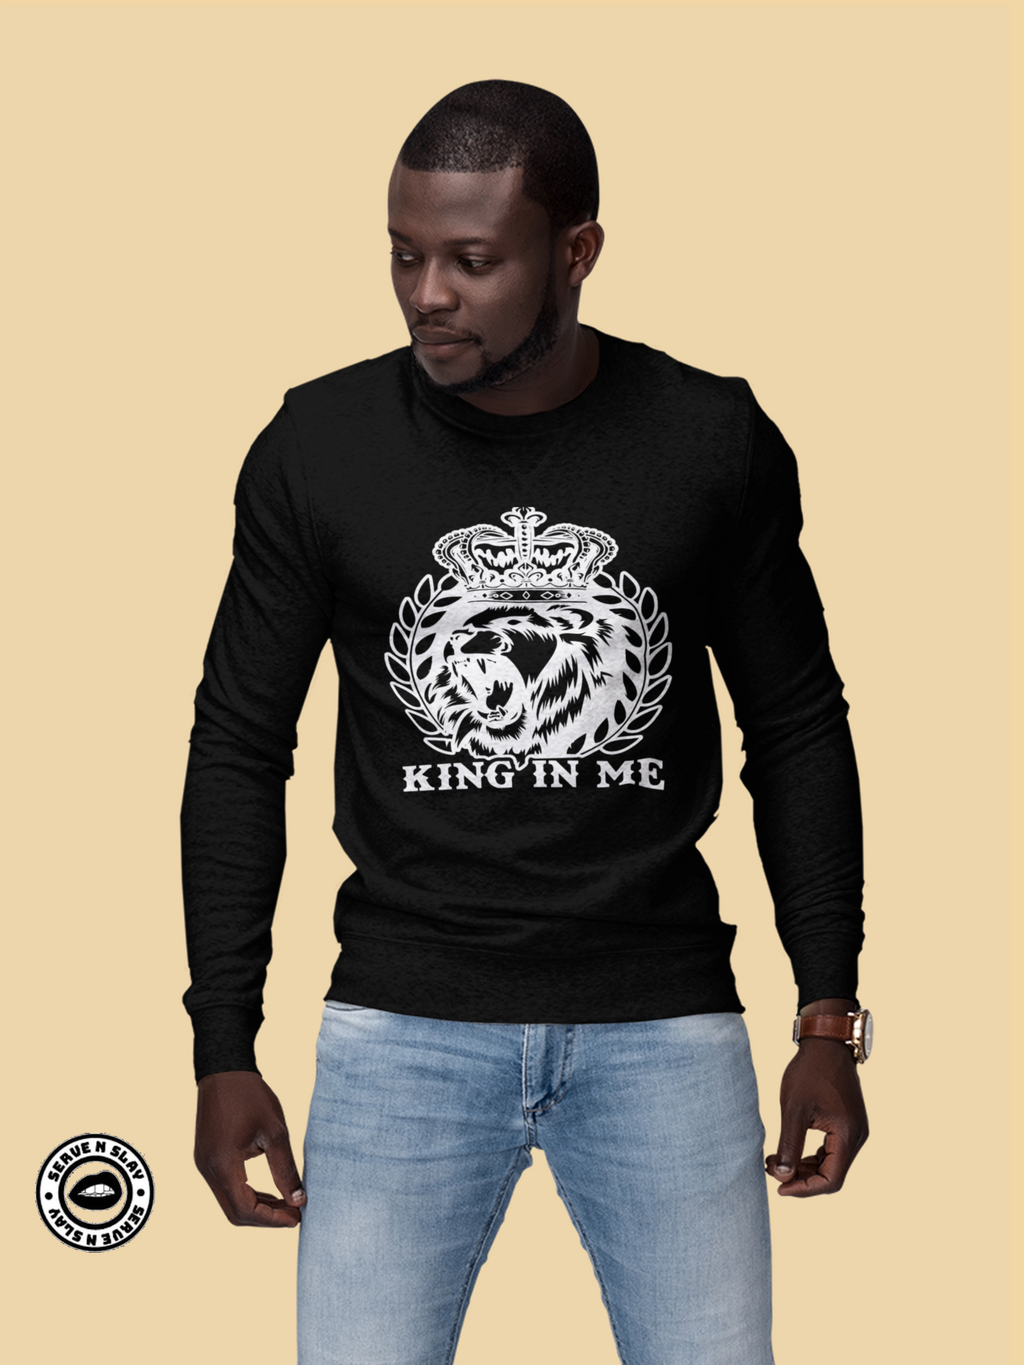 King In Me Sweatshirt - Black Empowerment Apparel, Black Power Apparel, Black Culture Apparel, Black History Apparel, ServeNSlayTees, 